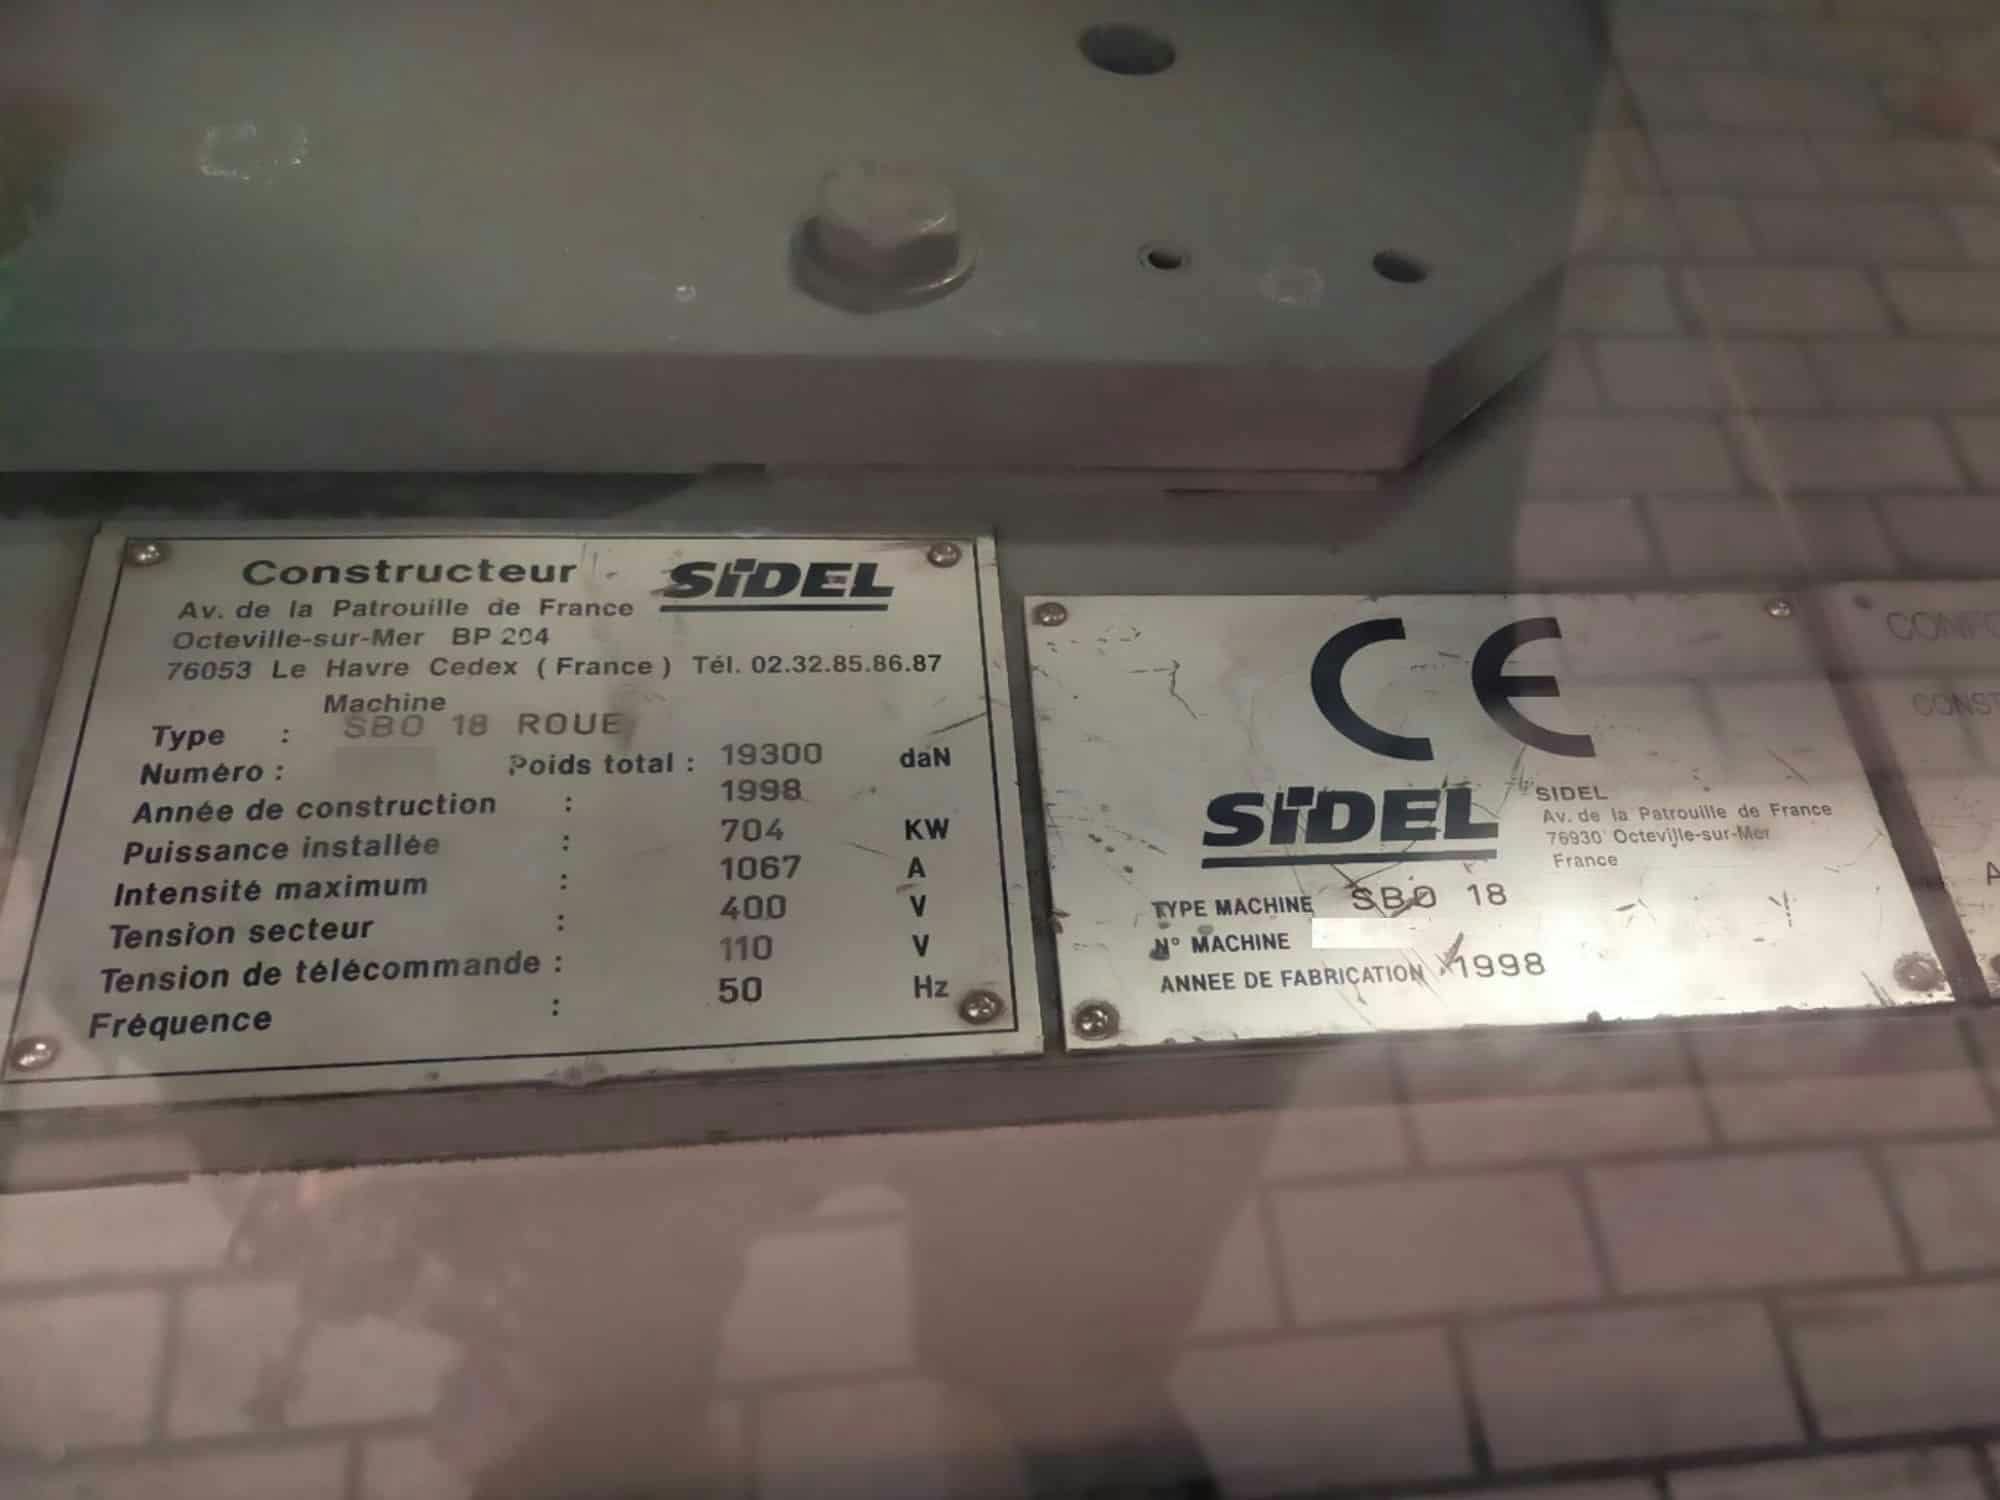 Výrobní štítek SIDEL SBO 18 Series 2